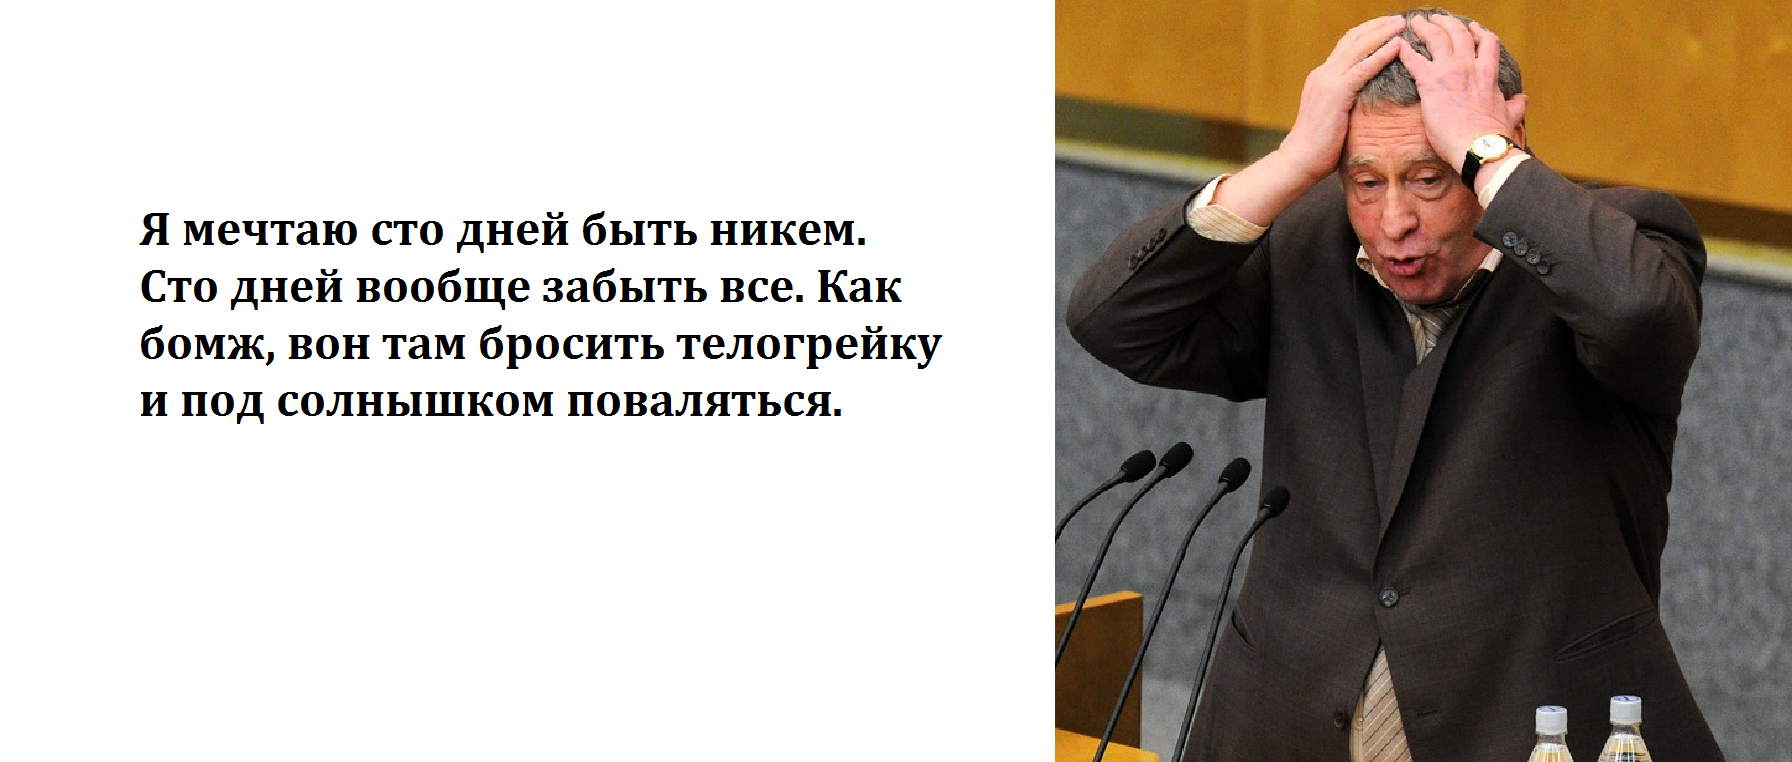 Фото Жириновского В Хорошем Качестве